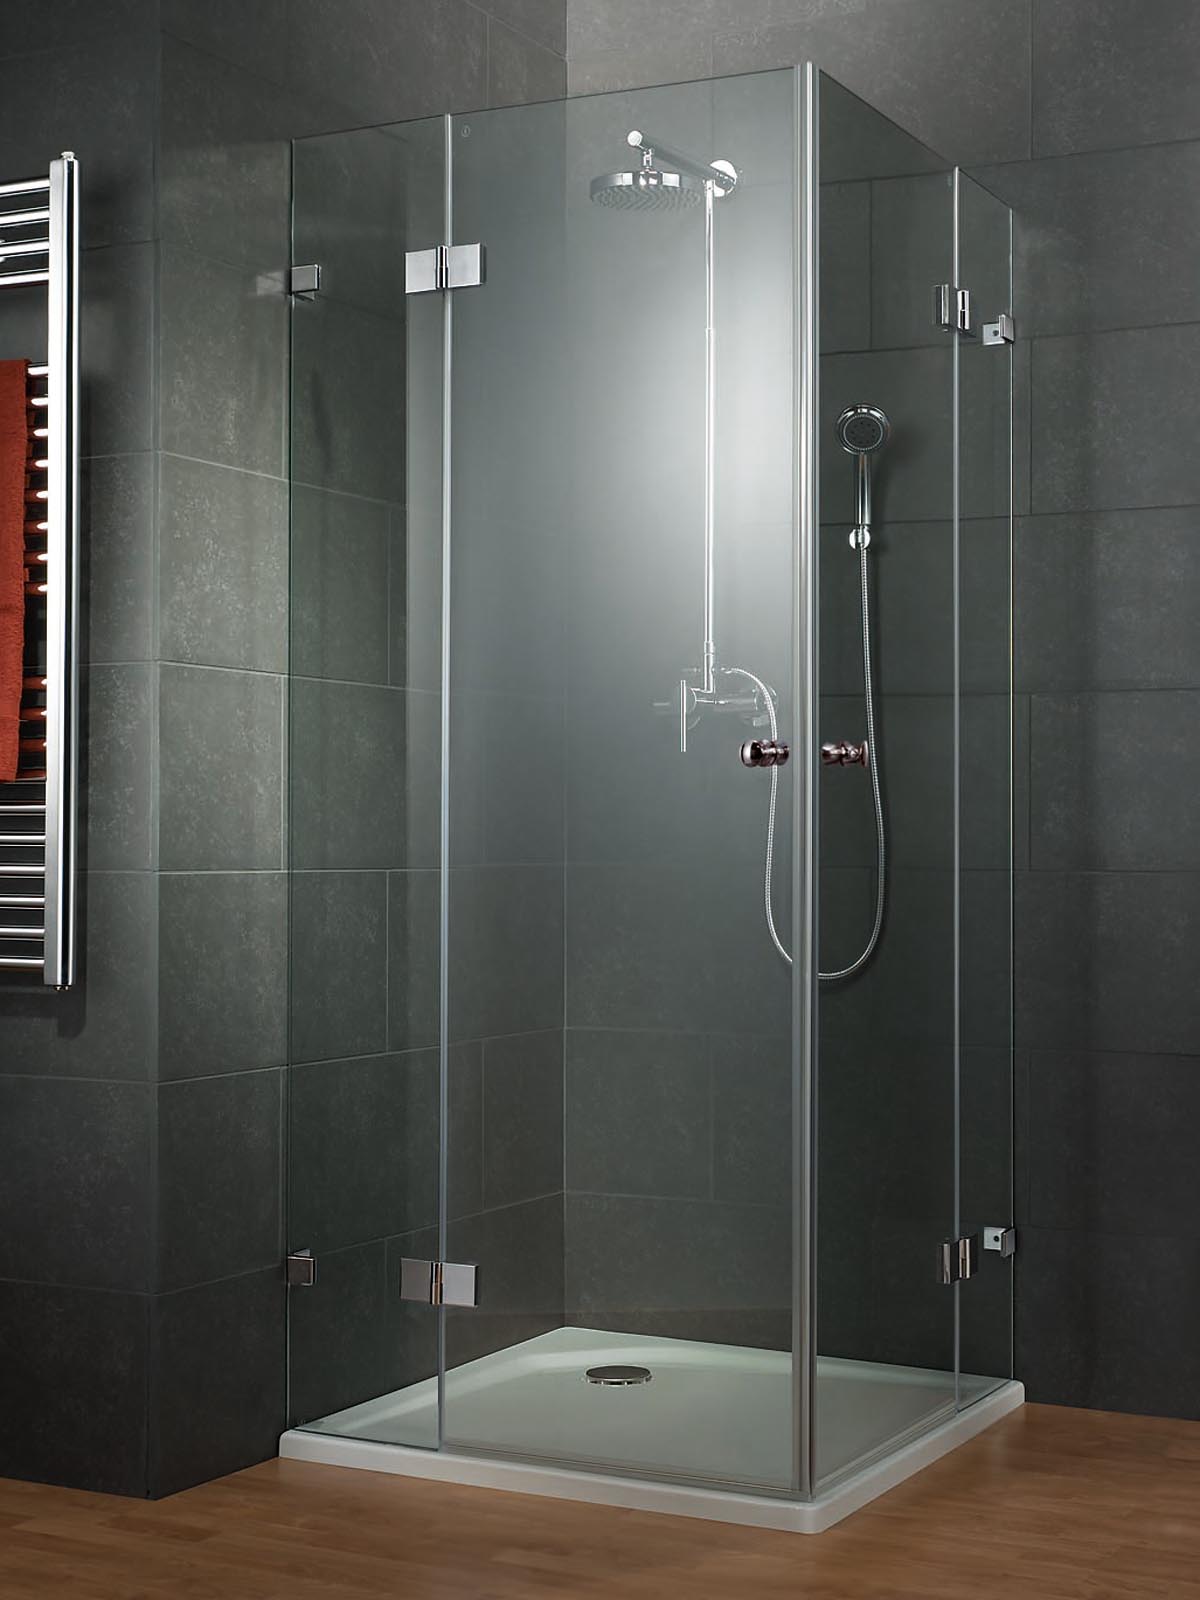 Elérhető áron terveztethet remek zuhanykabinokat.